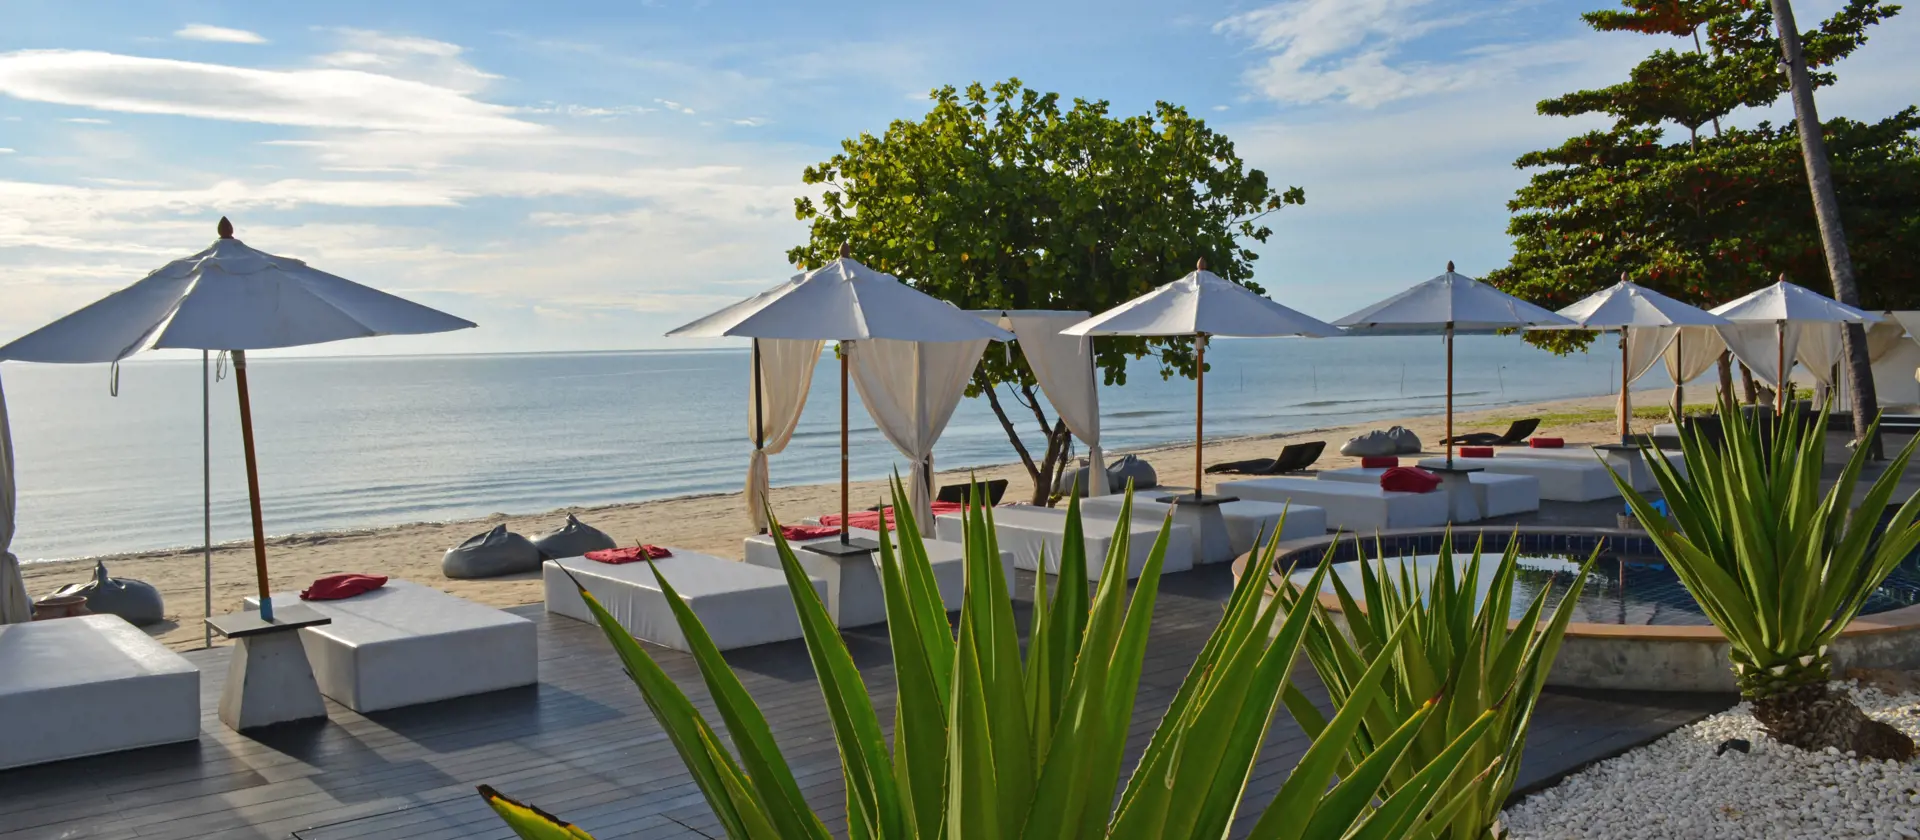 AAVA RESORT & SPA - Soldæk og restaurant ligger med udsigt til stranden og havet, Check Point Travel